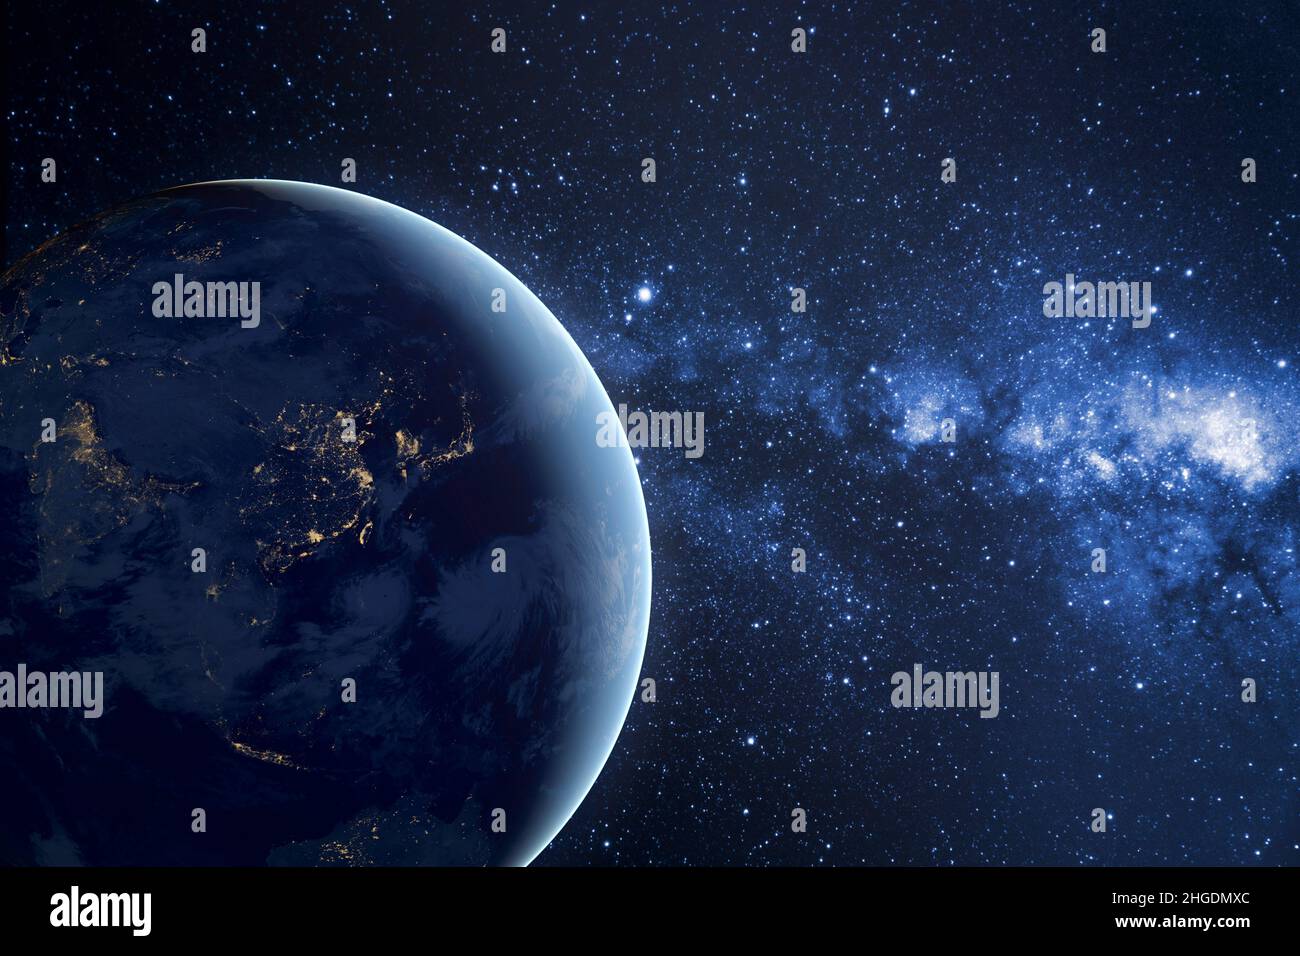 Planète Terre planète dans l'espace profond contre la nébuleuse bleue.Vue de nuit depuis l'orbite de la planète avec les lumières des villes.Papier peint sombre de l'espace extérieur avec manger Banque D'Images